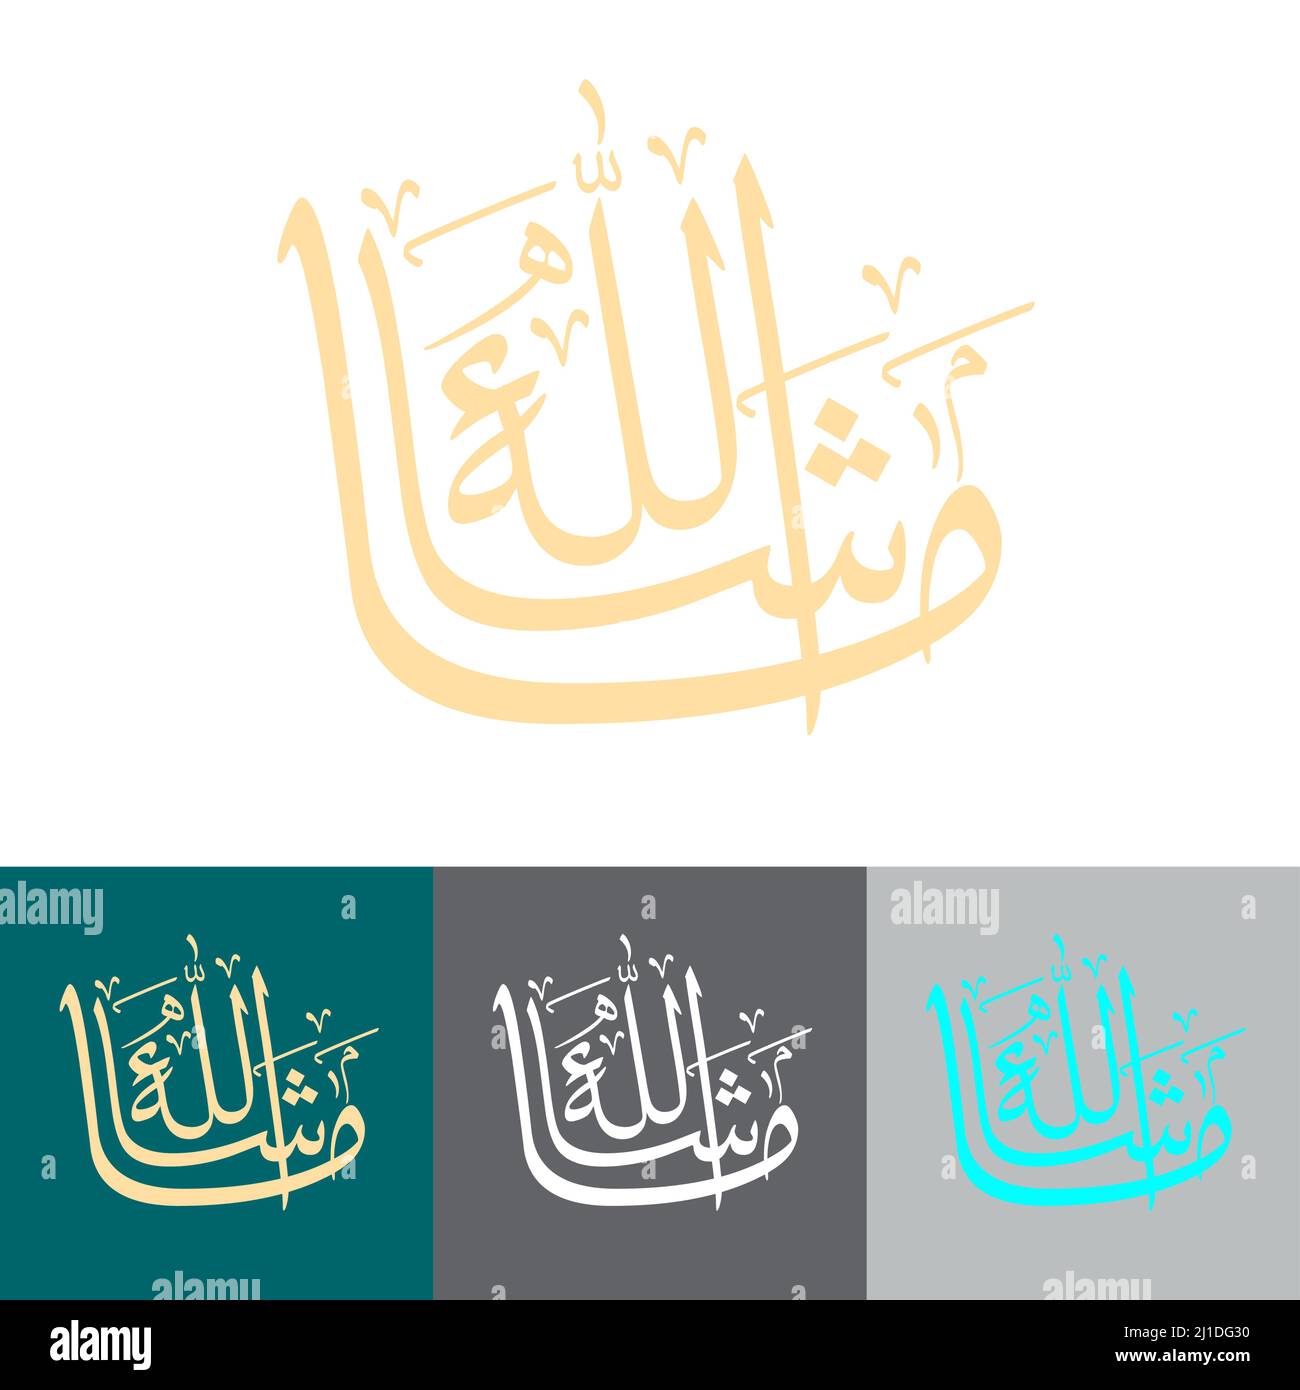 Arabic font Banque d'images vectorielles - Page 2 - Alamy